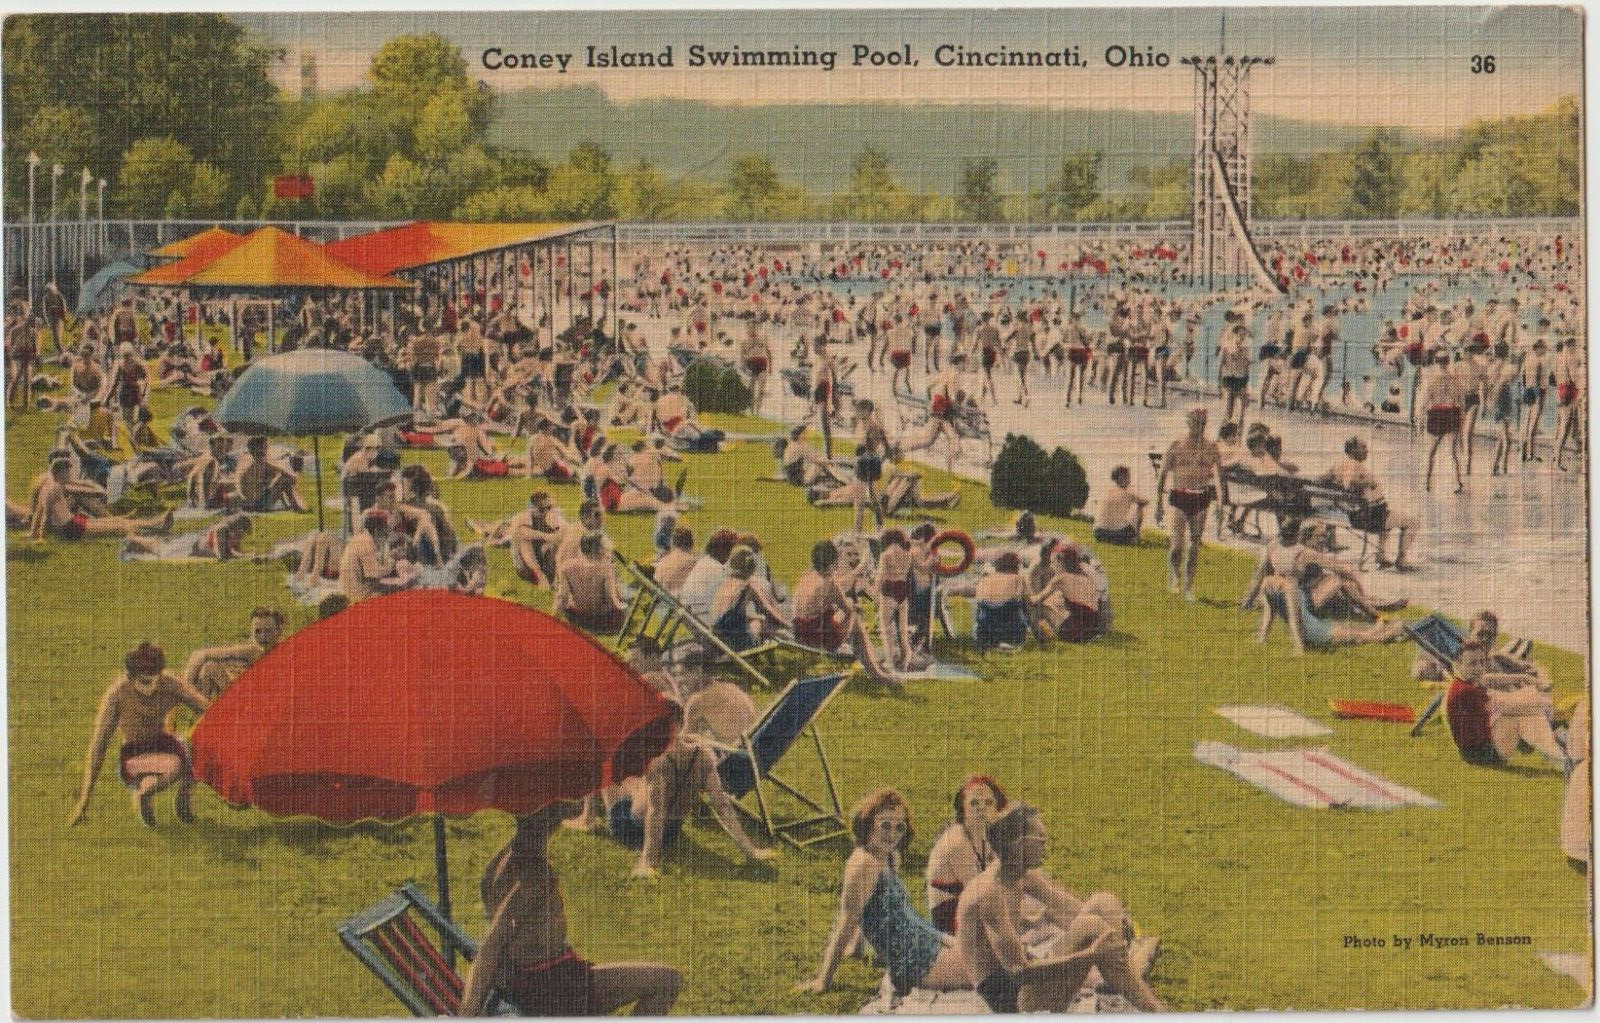 Coney Island Swimming Pool Cincinnati Ohio Sunlite Pool Unused Postcard #435